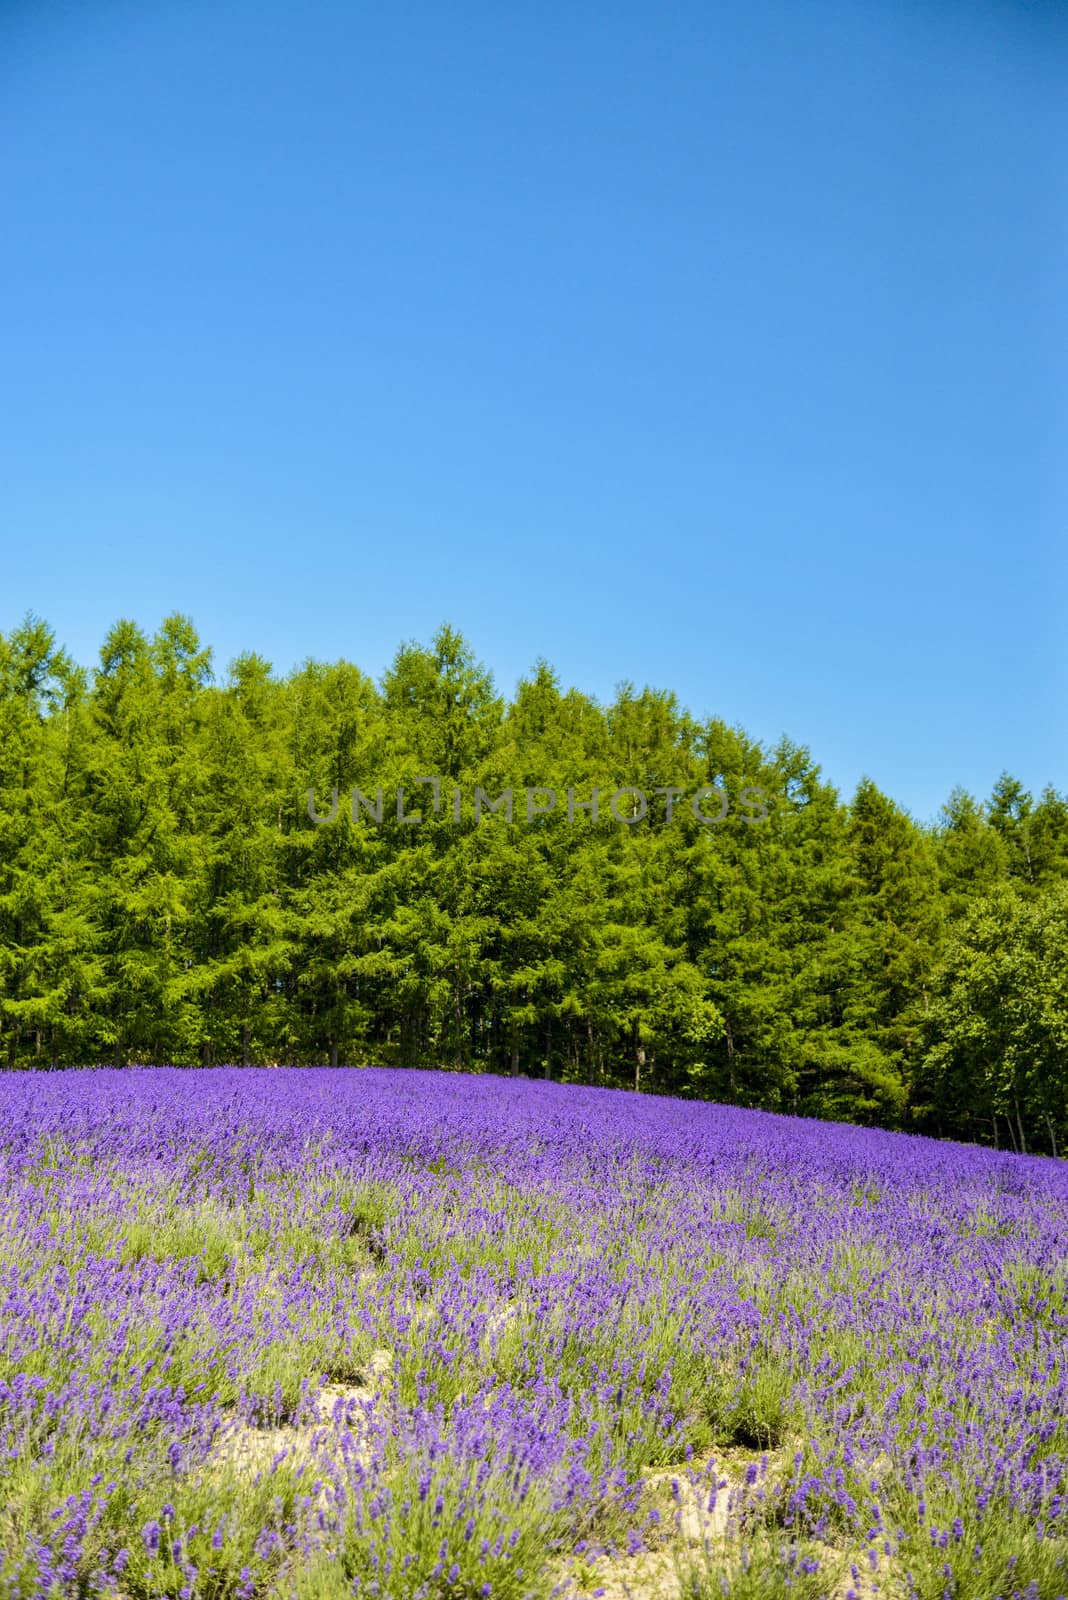 Lavender field with blue sky2 by gjeerawut